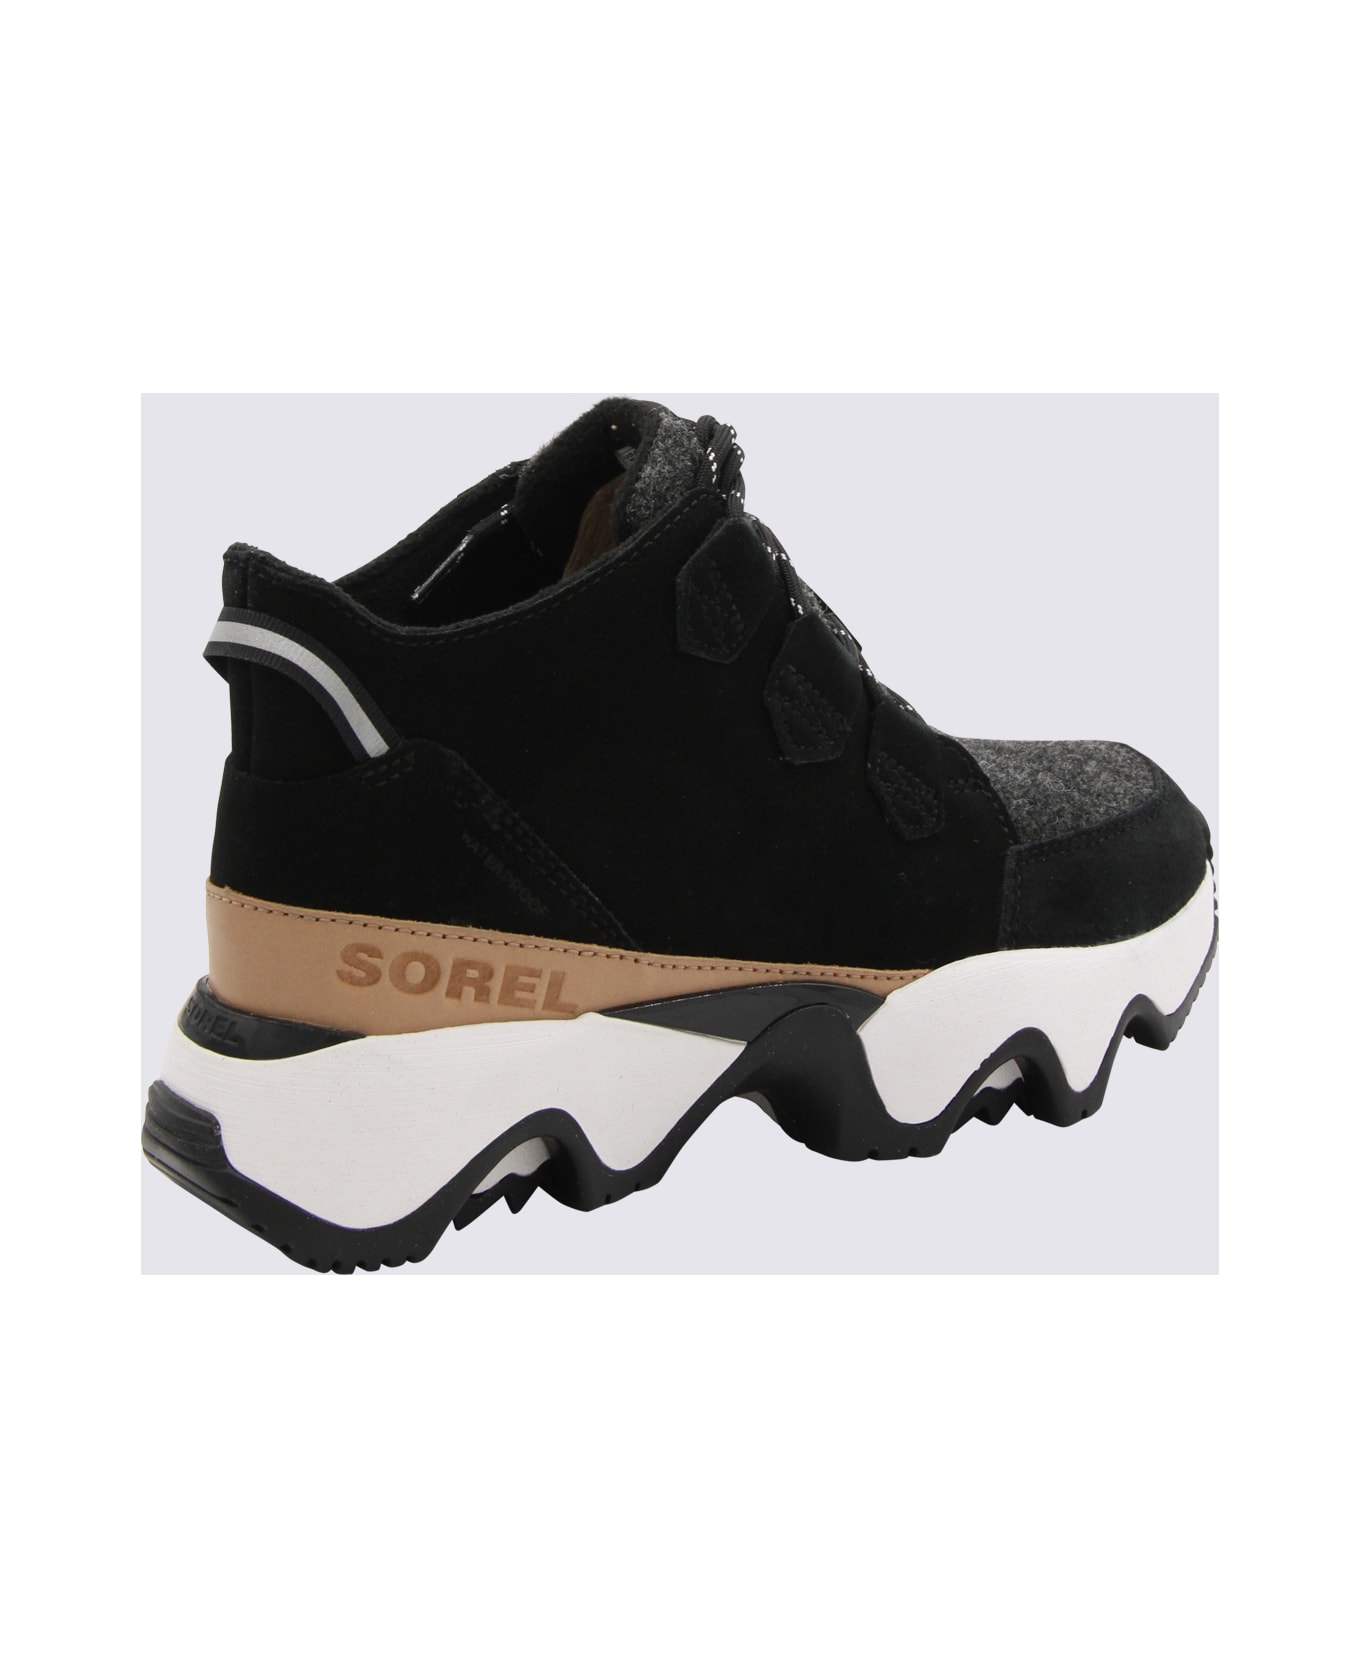 Sorel Black And Sea Salt Leather Kinetic Impact C-wp Sneakers - BLACK/SEA SALT スニーカー